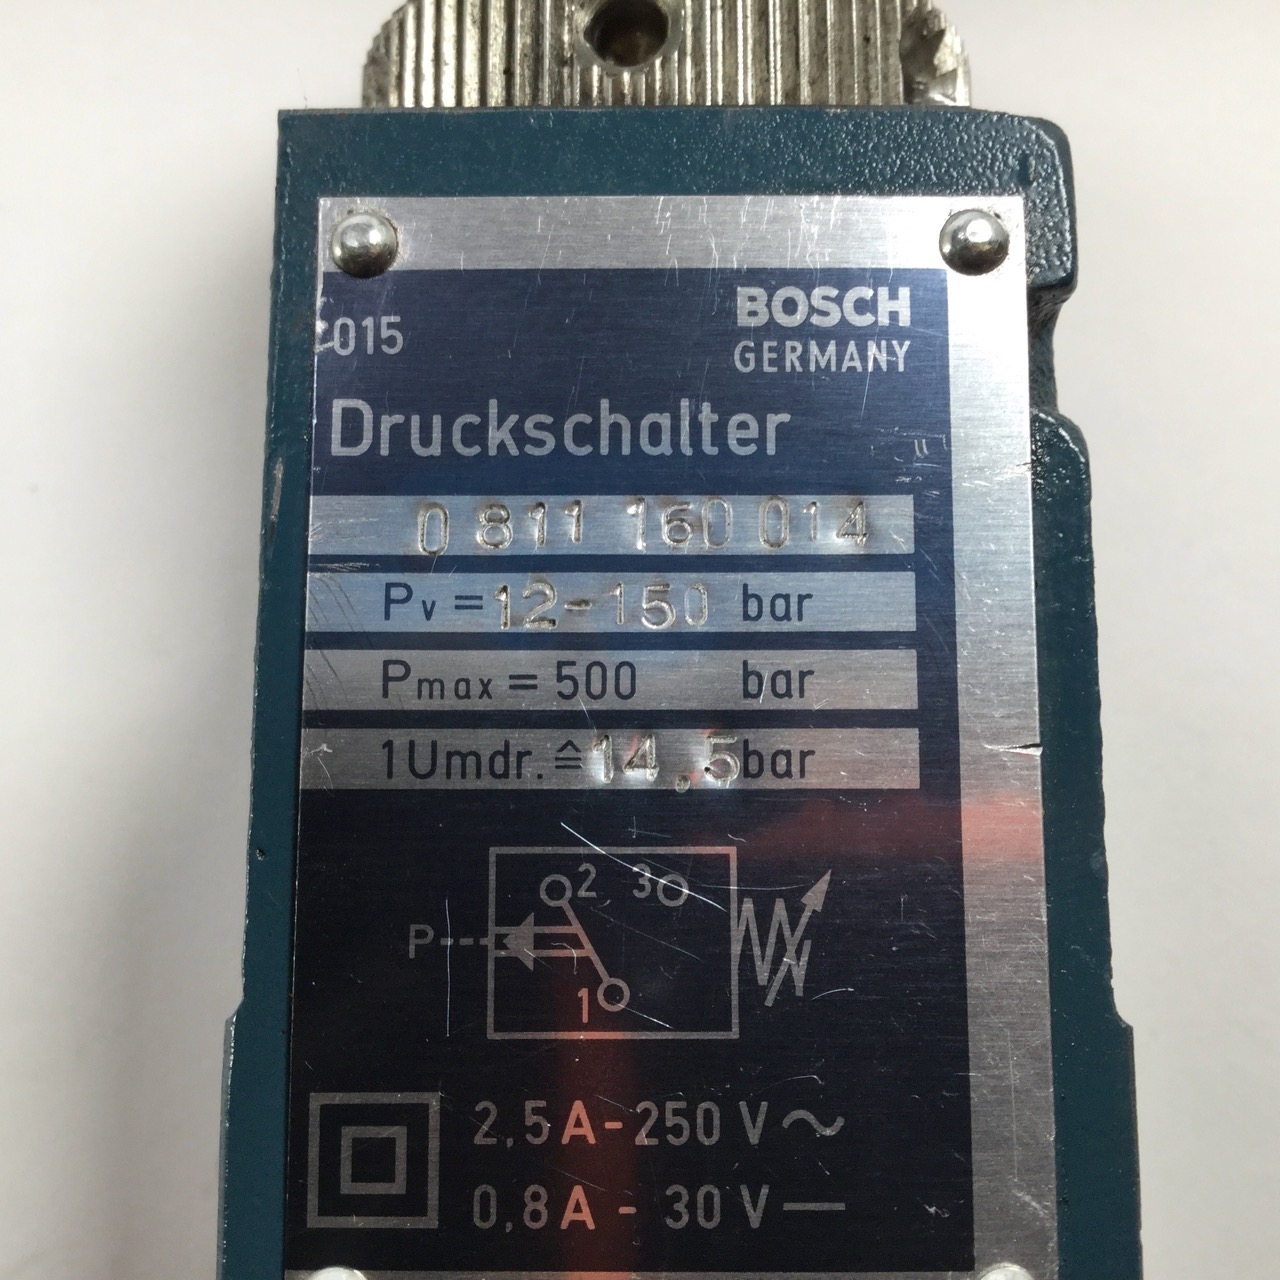 Bosch 0811160014 pressure switch Druckschalter 0 811 160 014 Used UMP